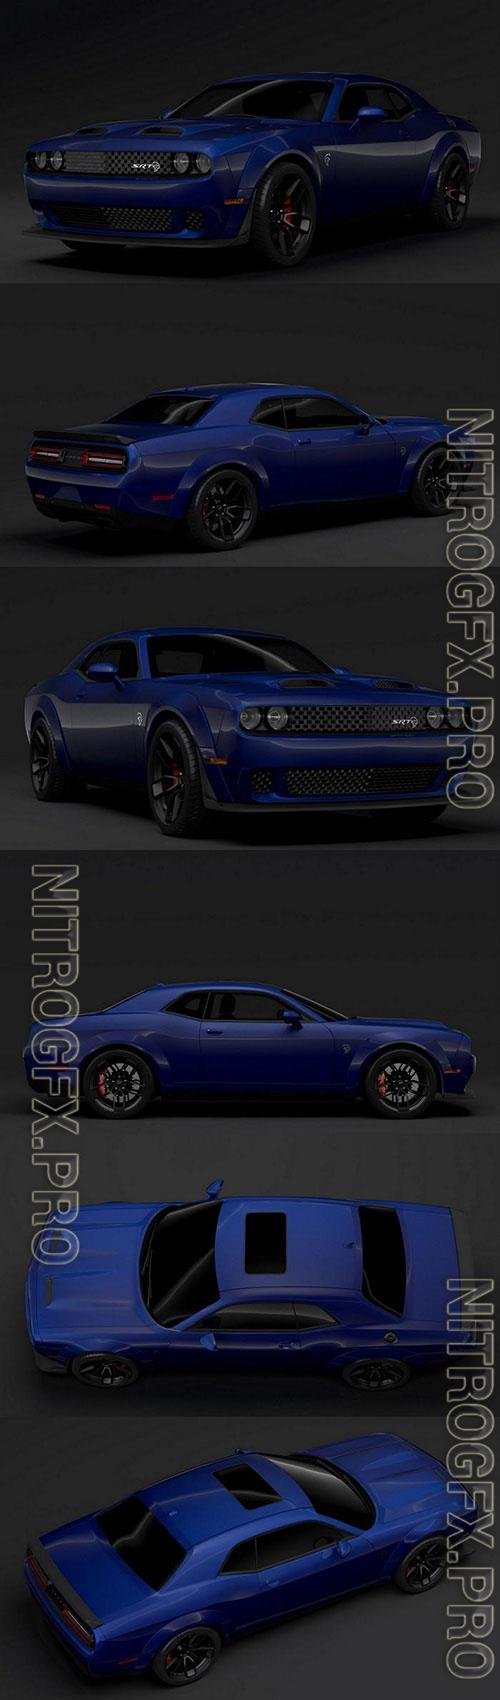 Dodge Challenger SRT Hellcat Widebody LC 2019 3D Model